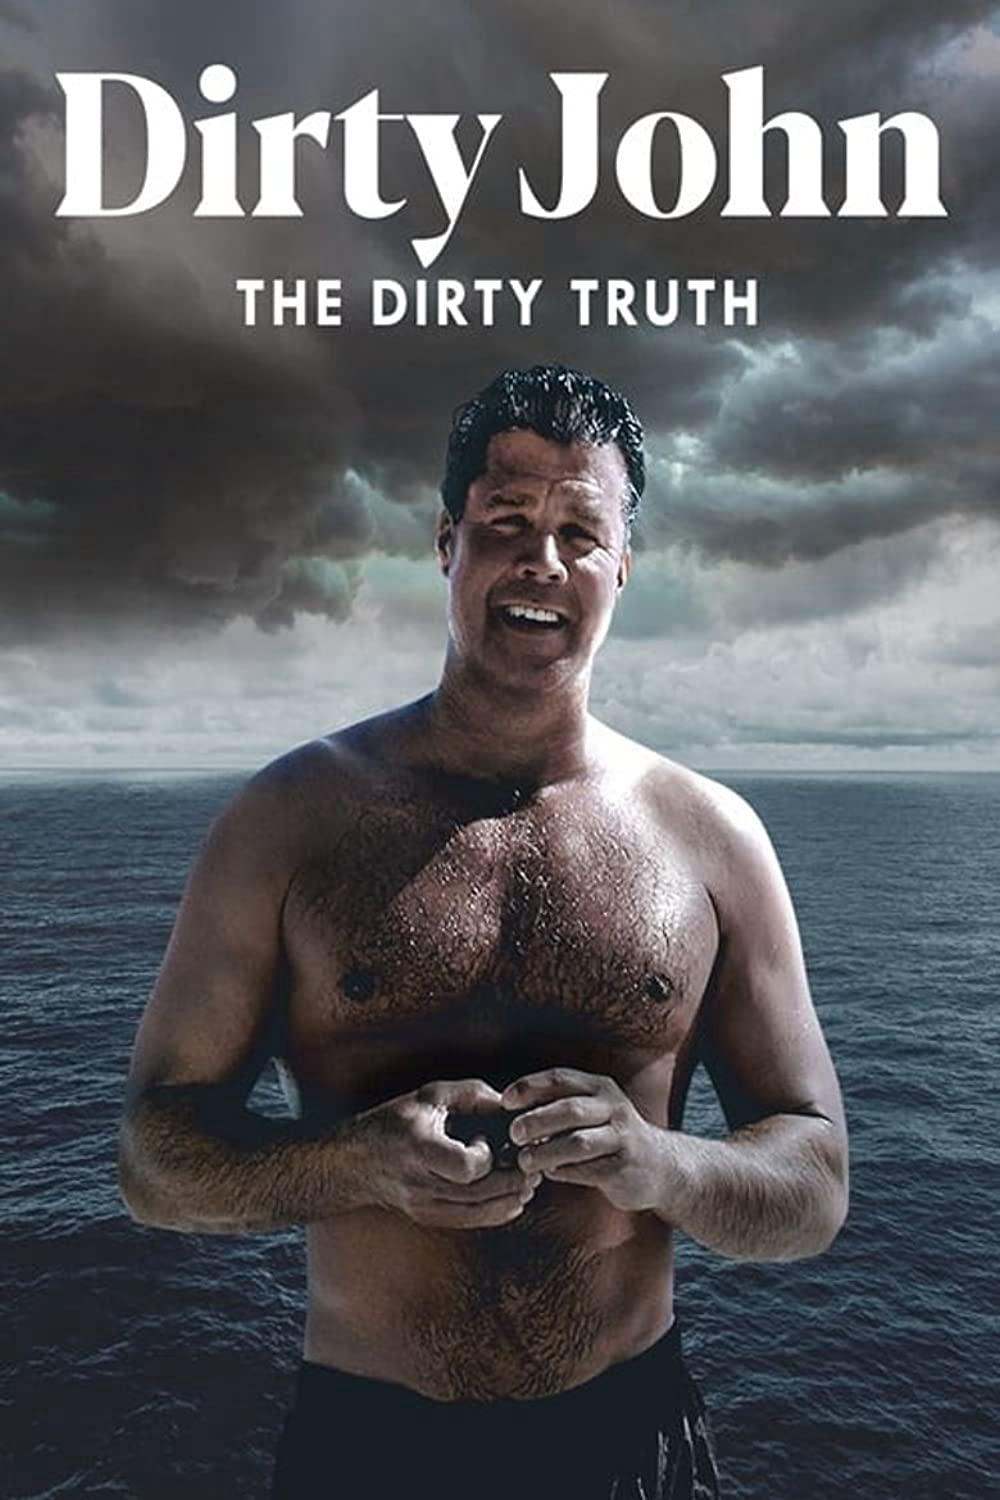 Poster Phim Tội Ác Của Dirty John (Dirty John, The Dirty Truth)